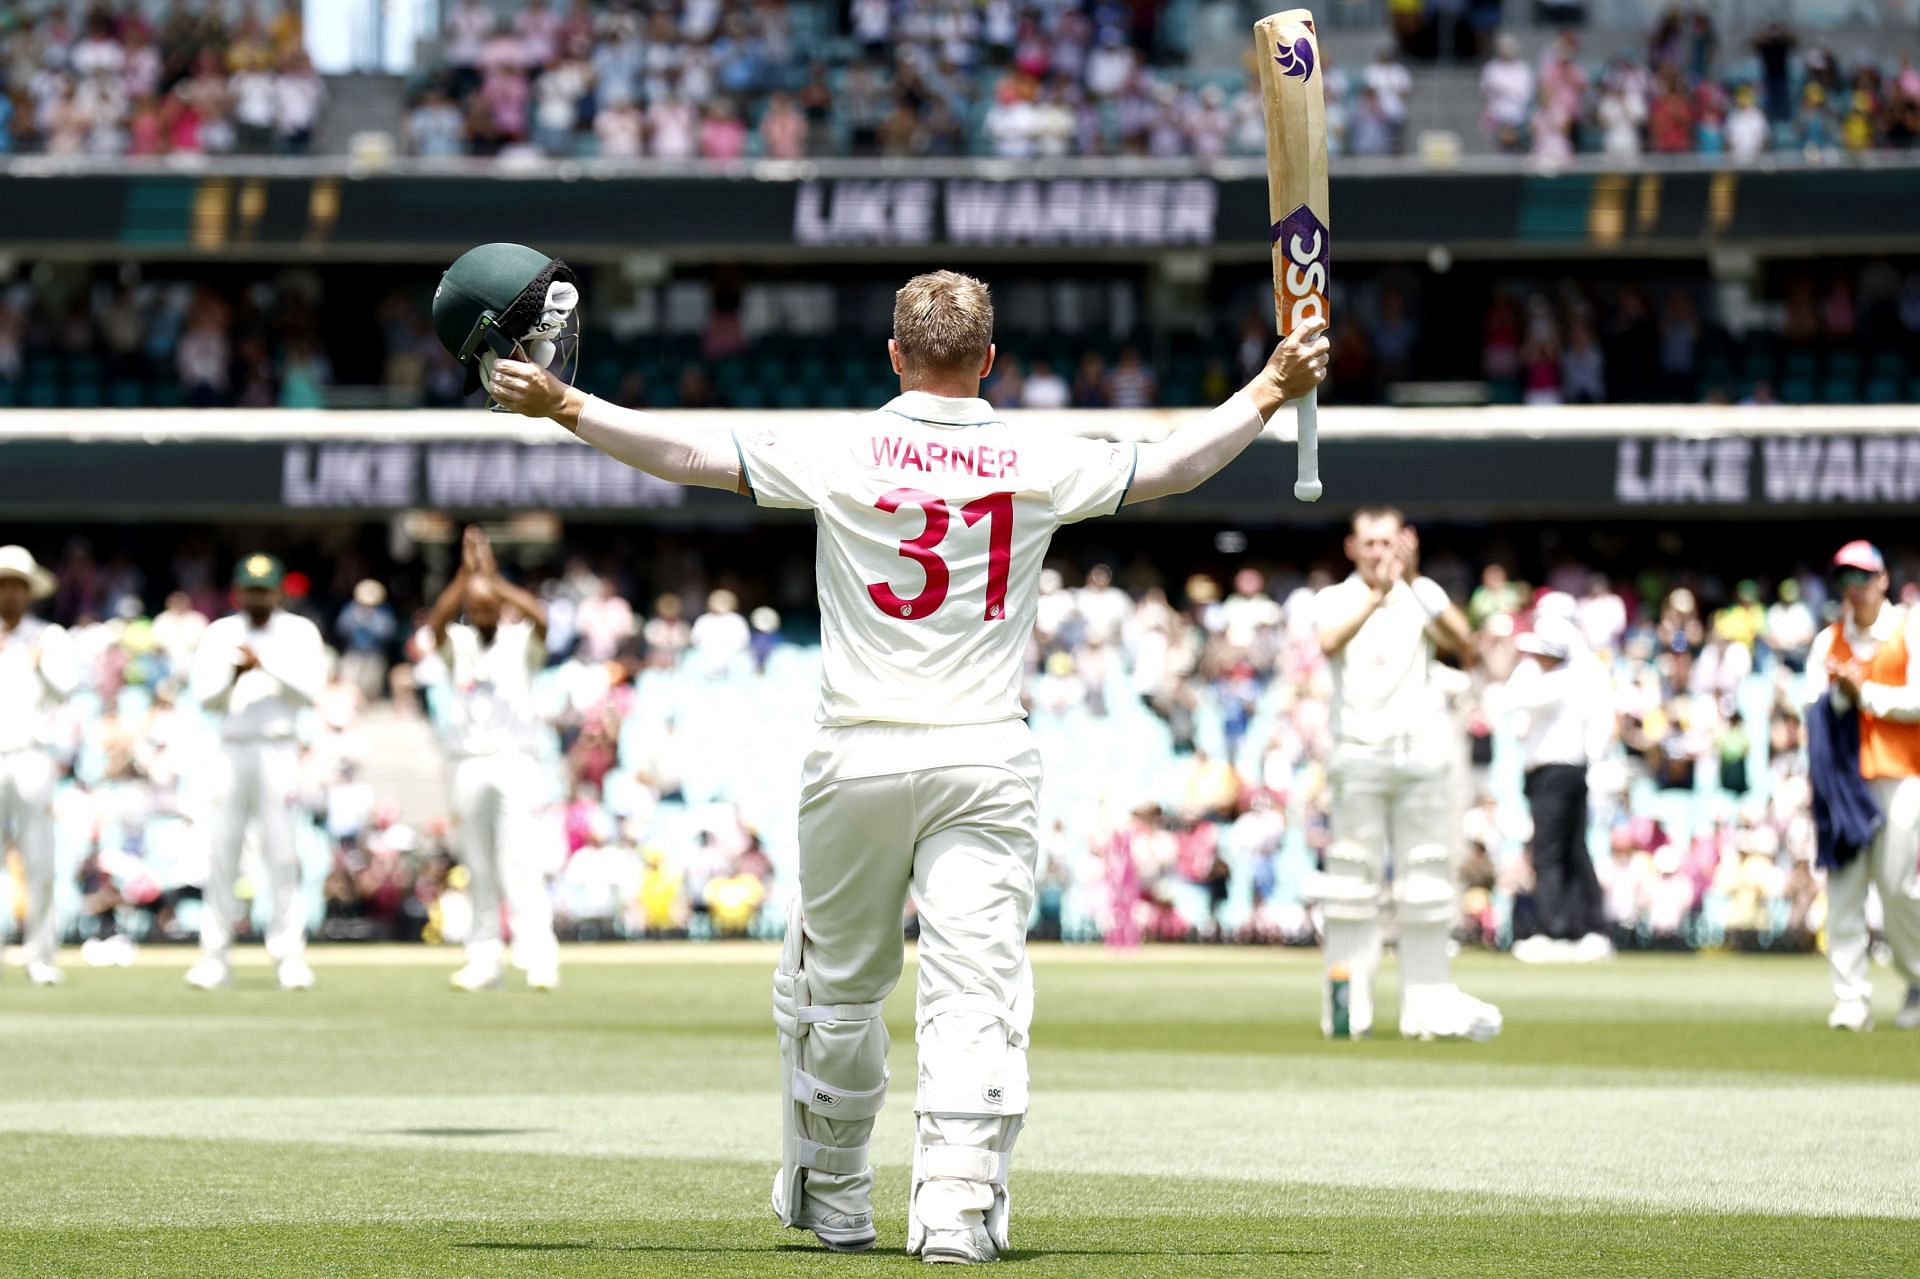 David Warner struck 26 centuries and 37 half-centuries in Test cricket. [P/C: Getty]